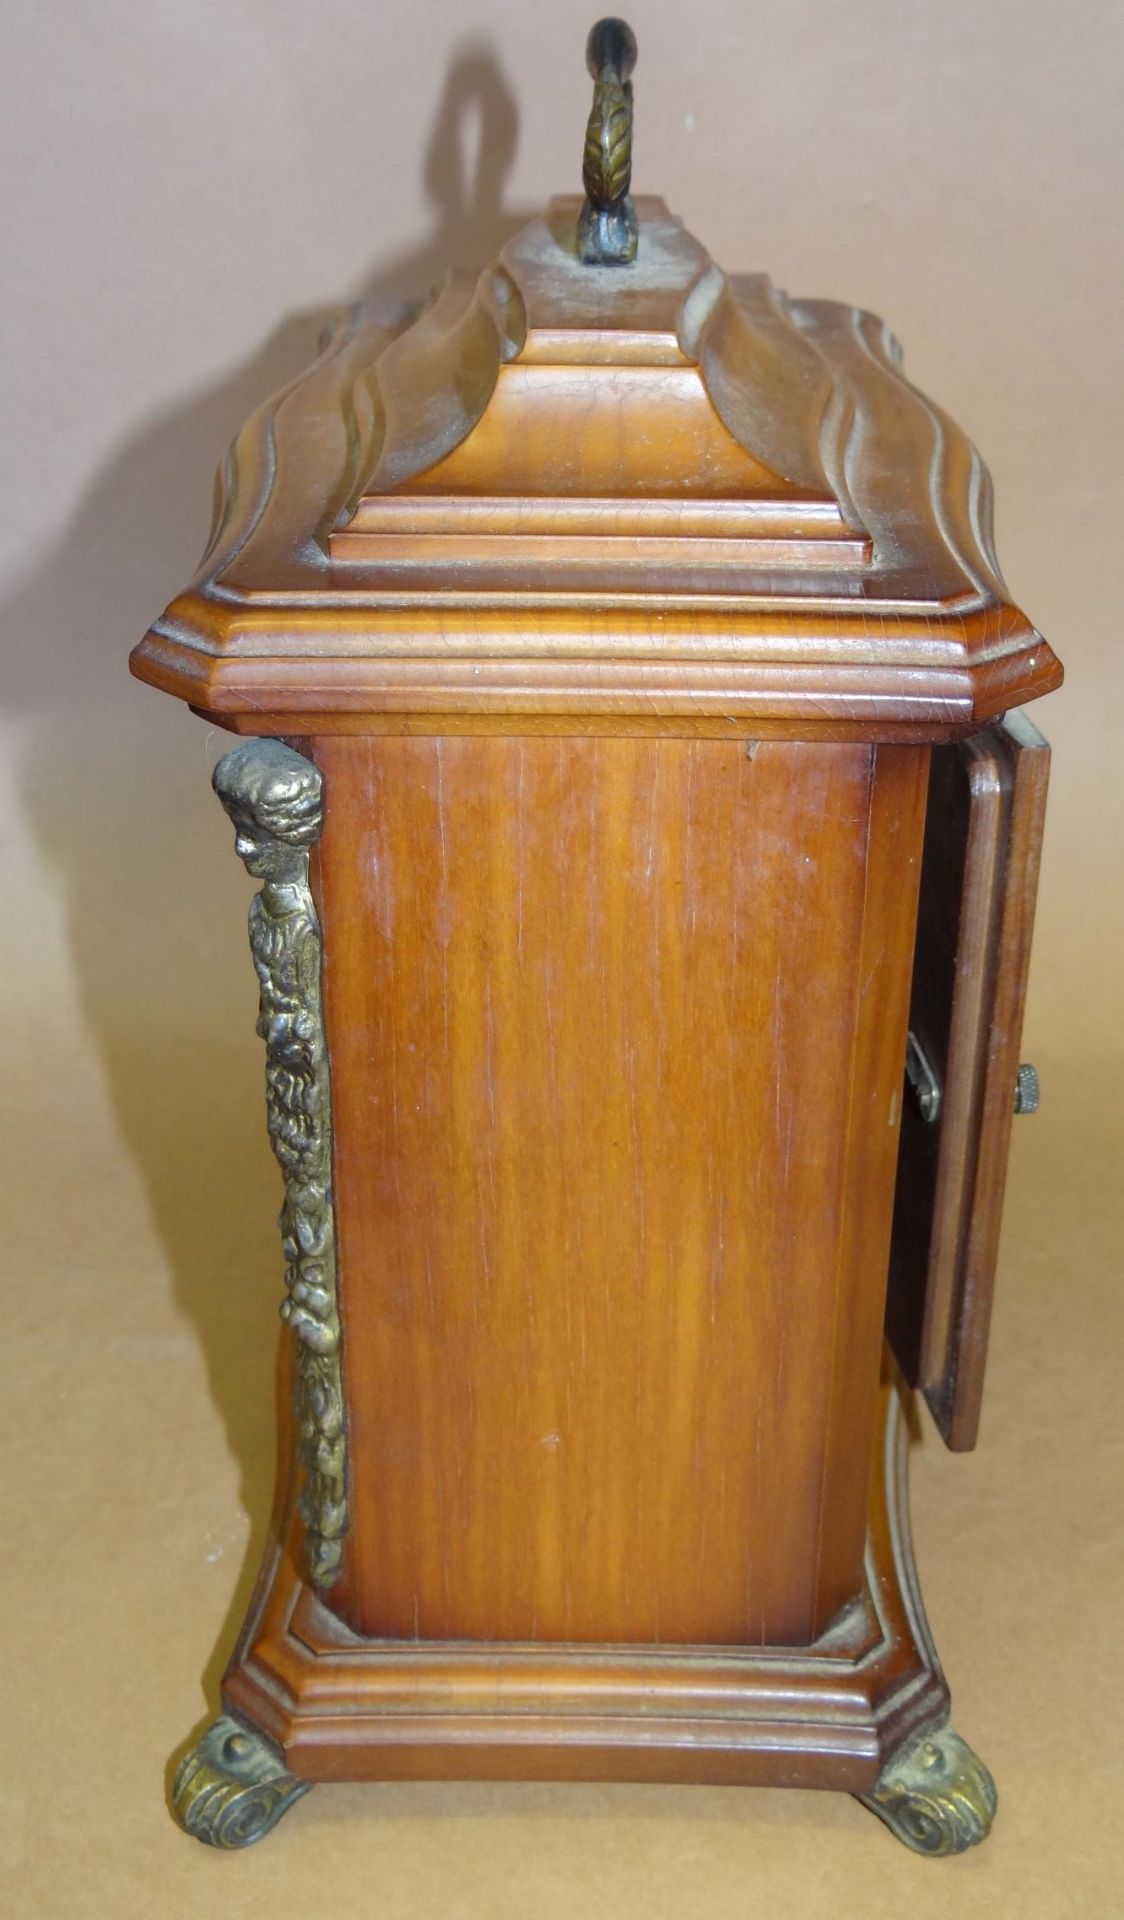 mechan. Tischuhr "Dugena" in Holzgehäuse, Werk und Schlag geht, H-24 cm, B-21 c - Bild 4 aus 6